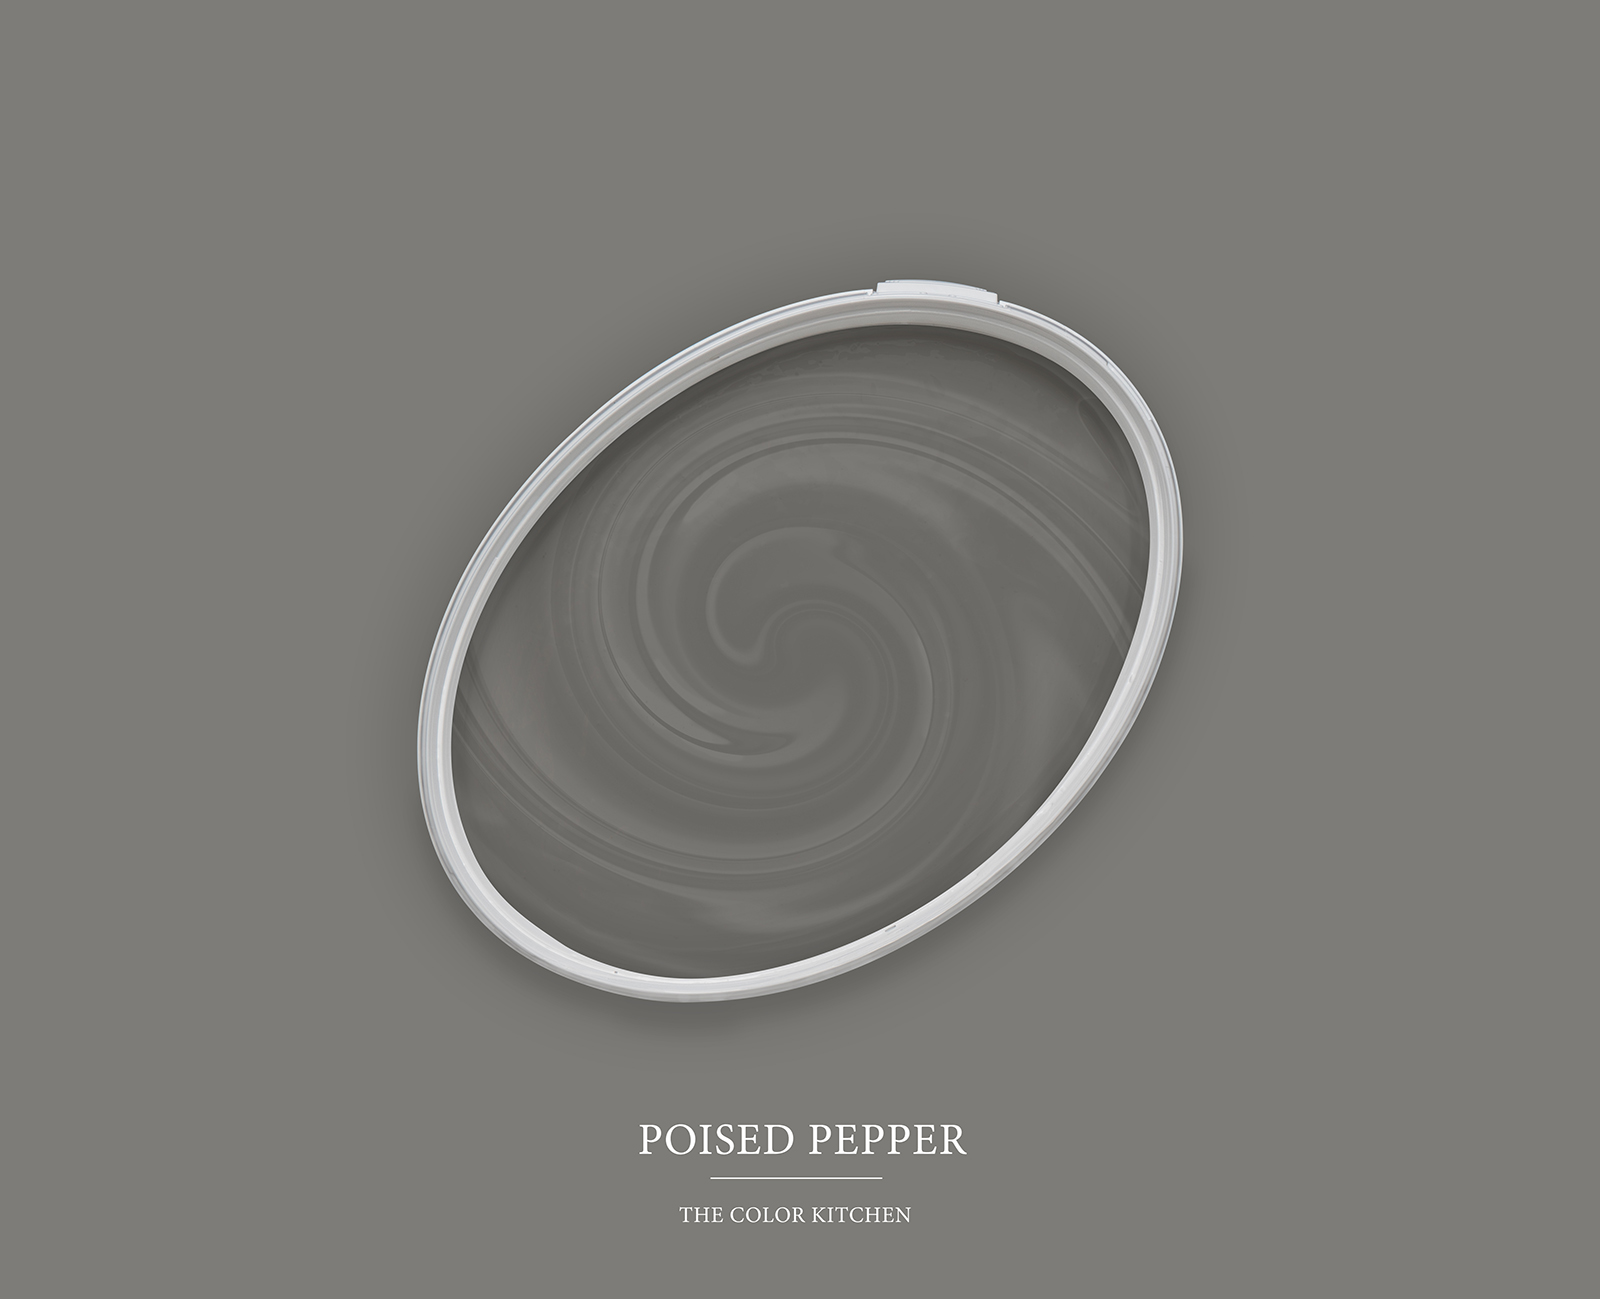 Wandfarbe in dunklem Grau »Poised Pepper« TCK1013 – 5 Liter
